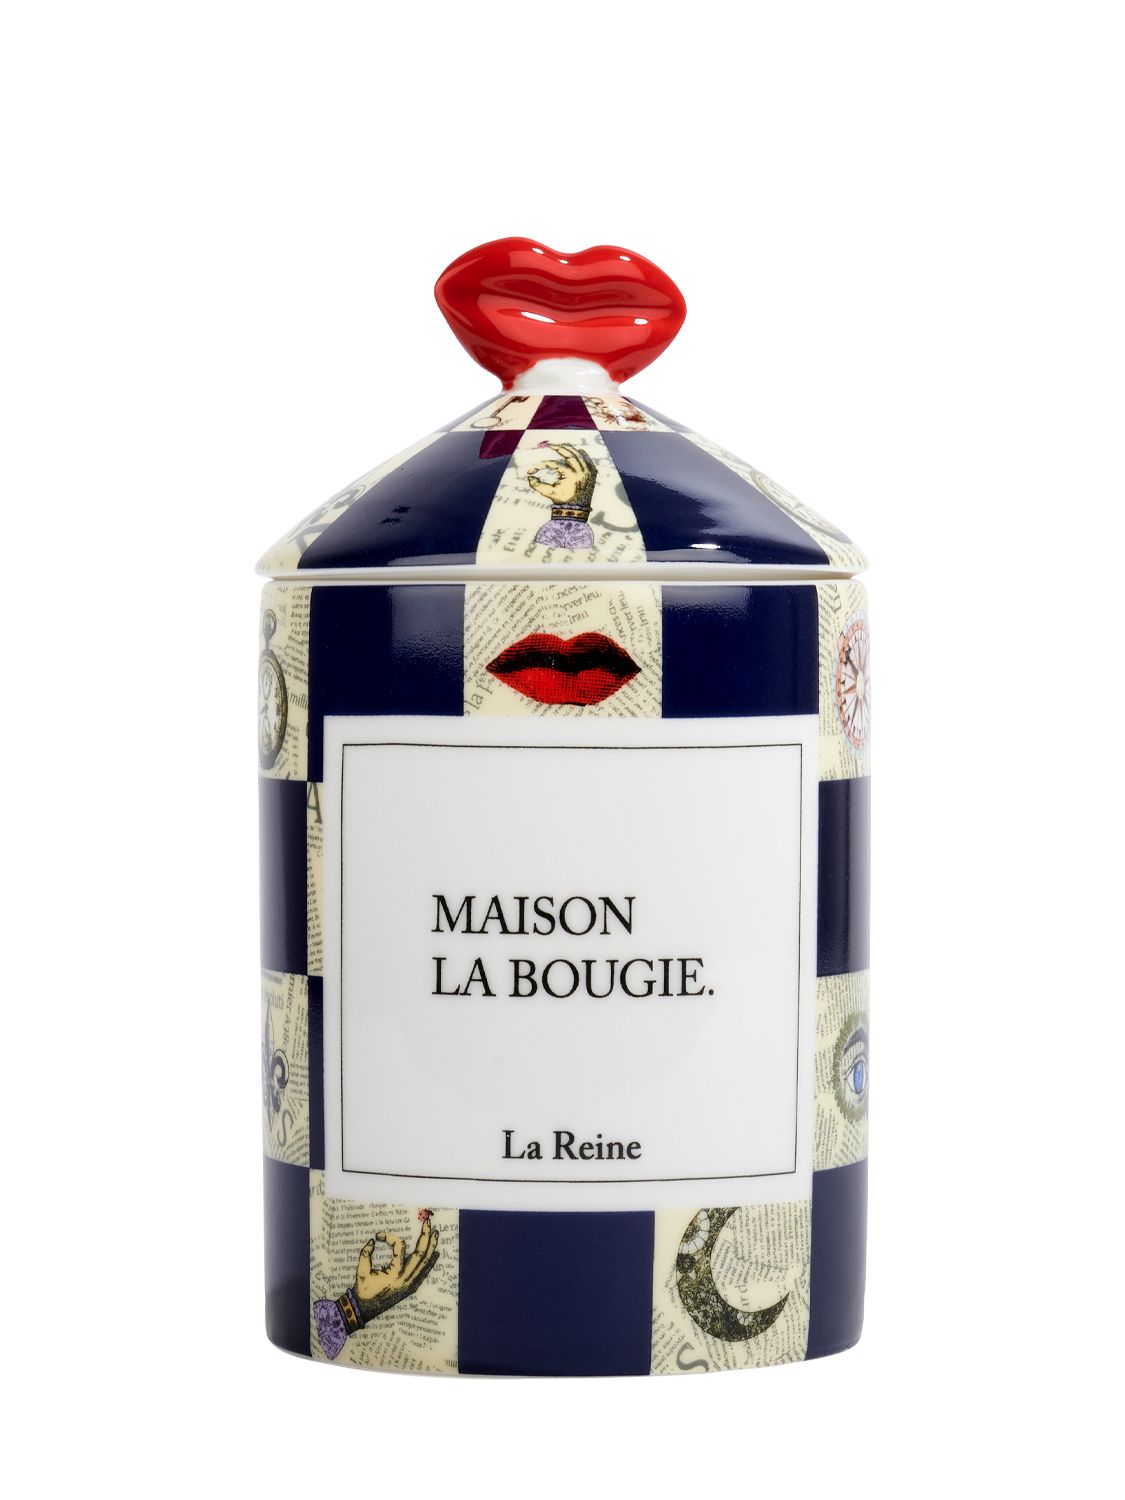 Maison La Bougie 350克la Reine Candle香氛蜡烛 In Multicolor